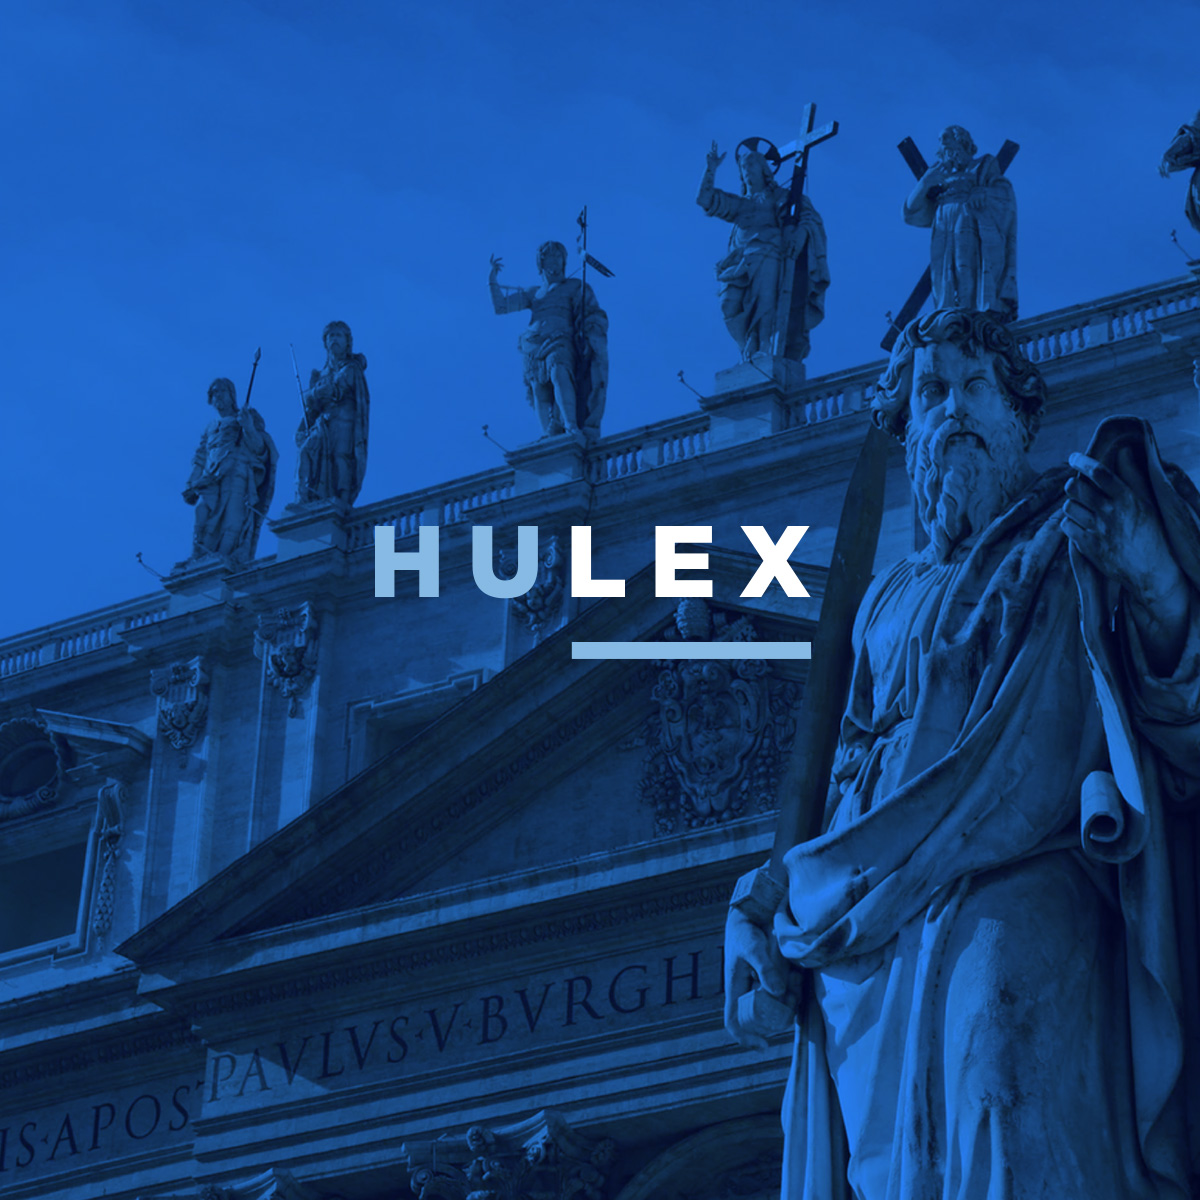 Hulex - case study Studio Present